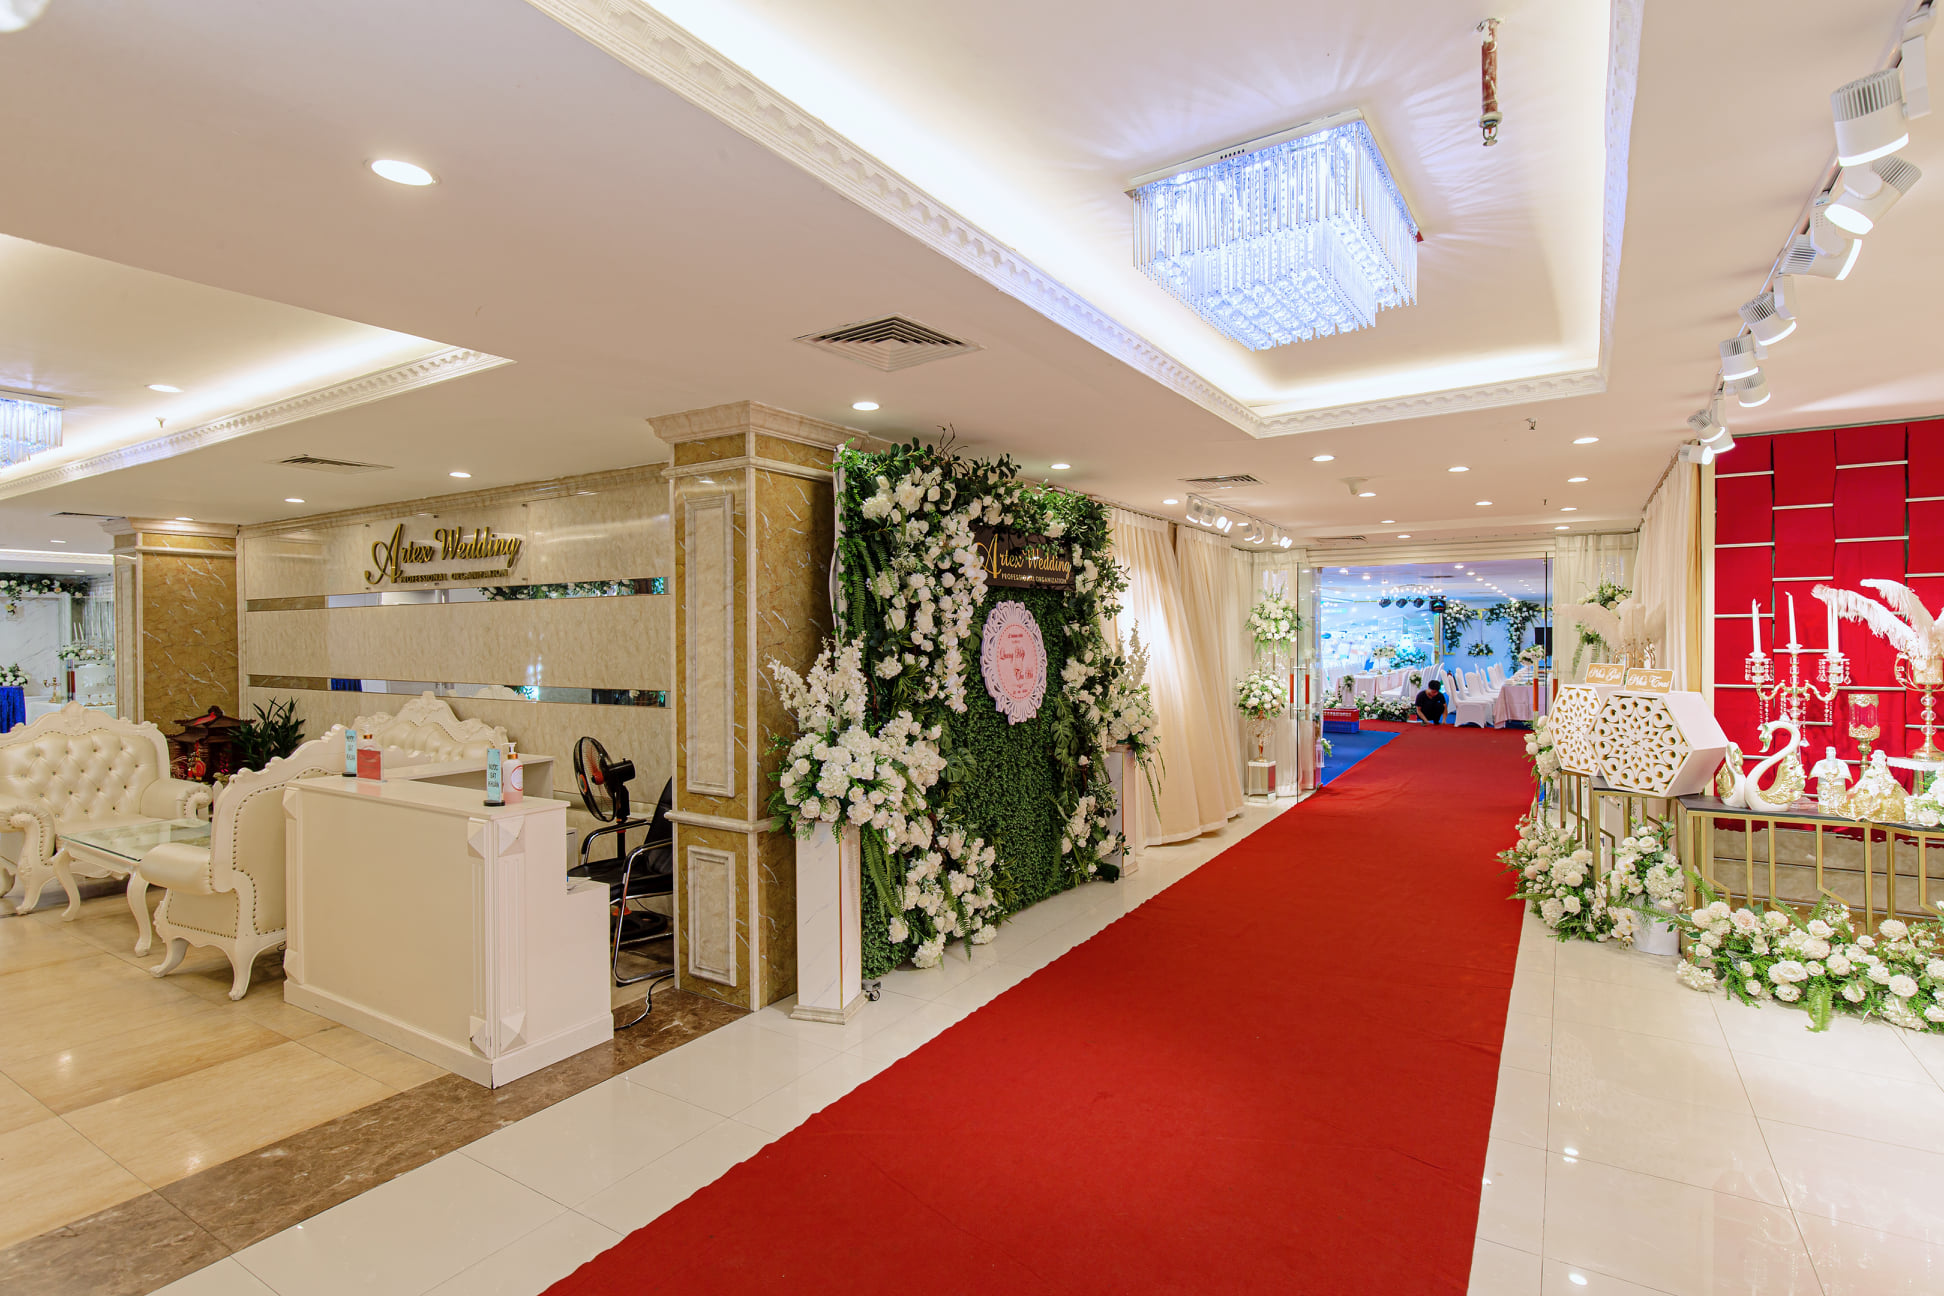 Tiệc cưới được tổ chức tại Trung tâm tiệc cưới và sự kiện Artex Hà Nội